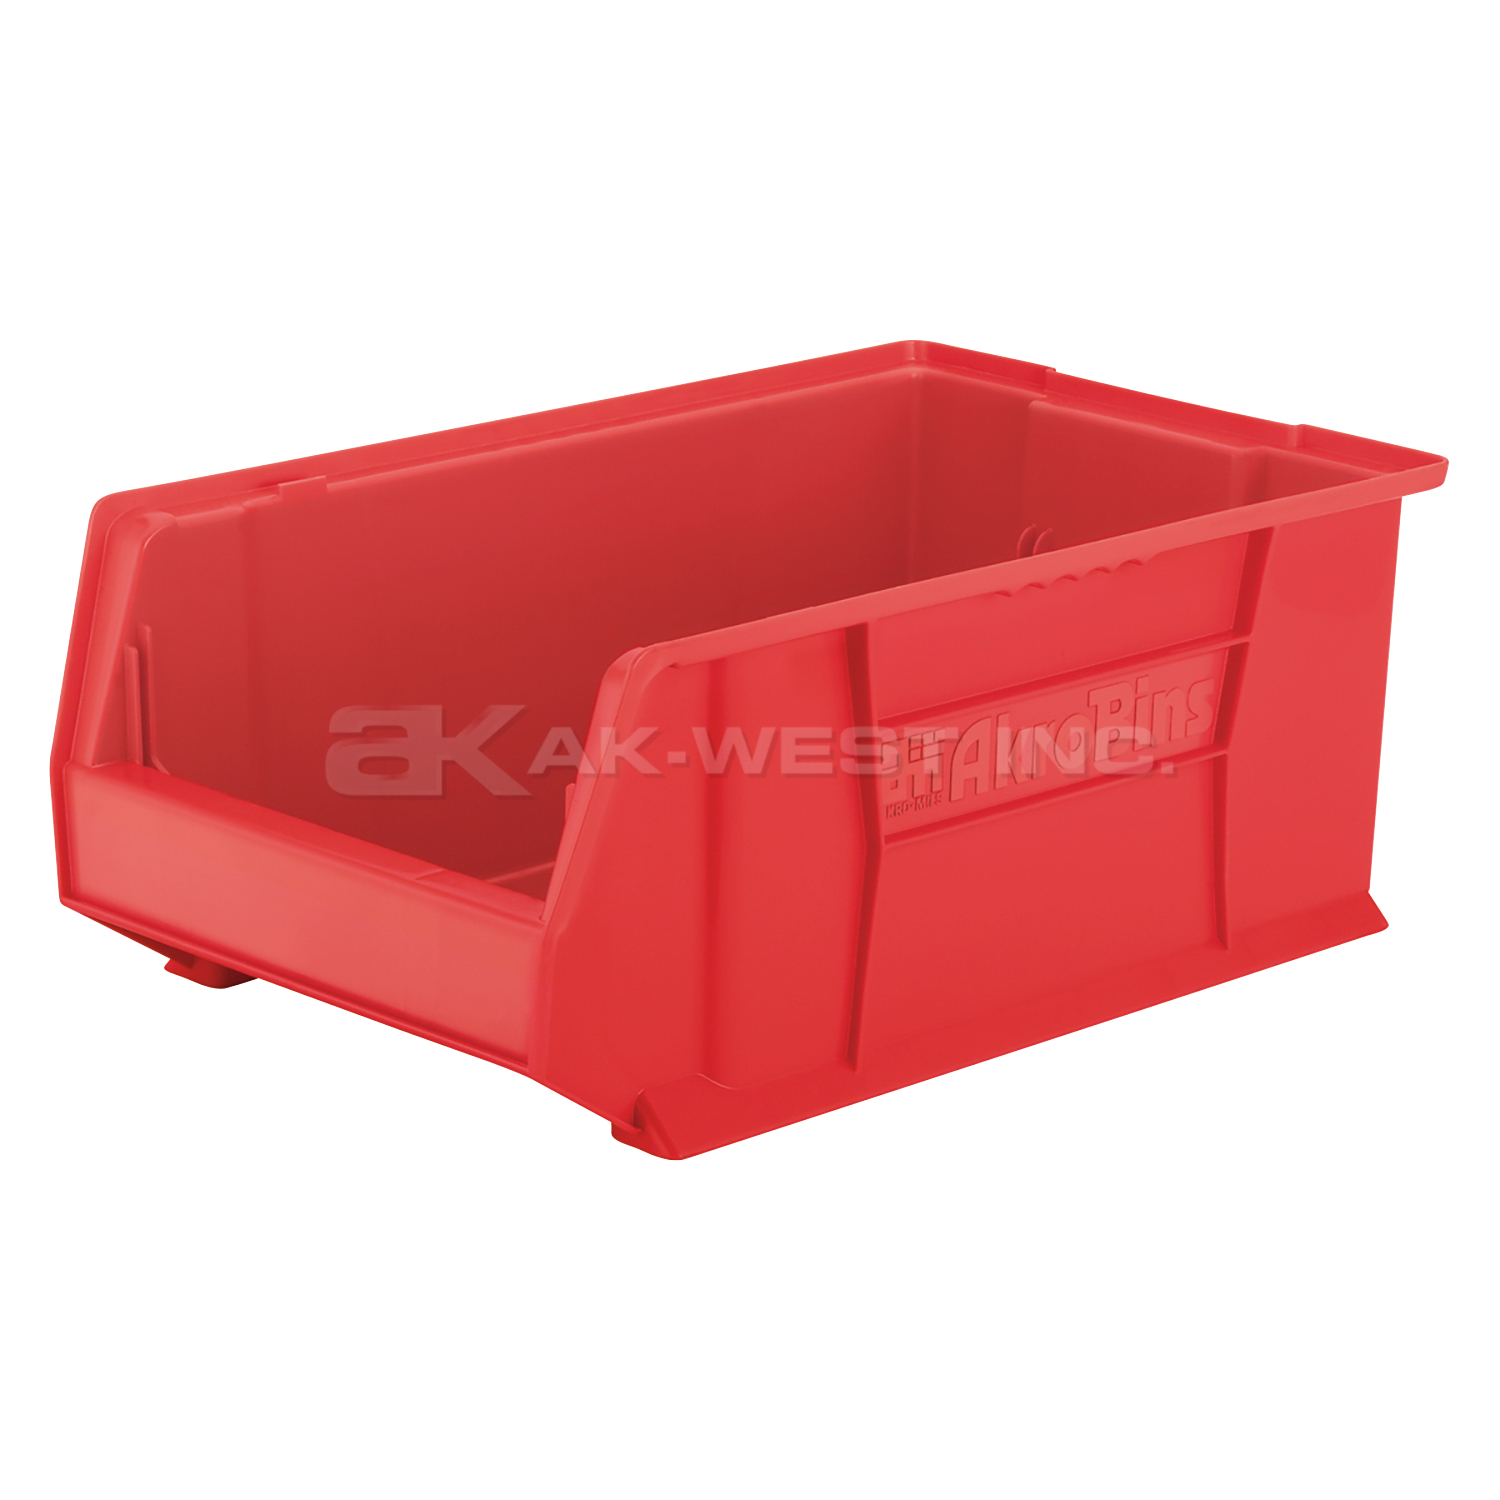 Red, 20" x 12-1/8" x 8" Stacking Shelf Bin (3 Per Carton)